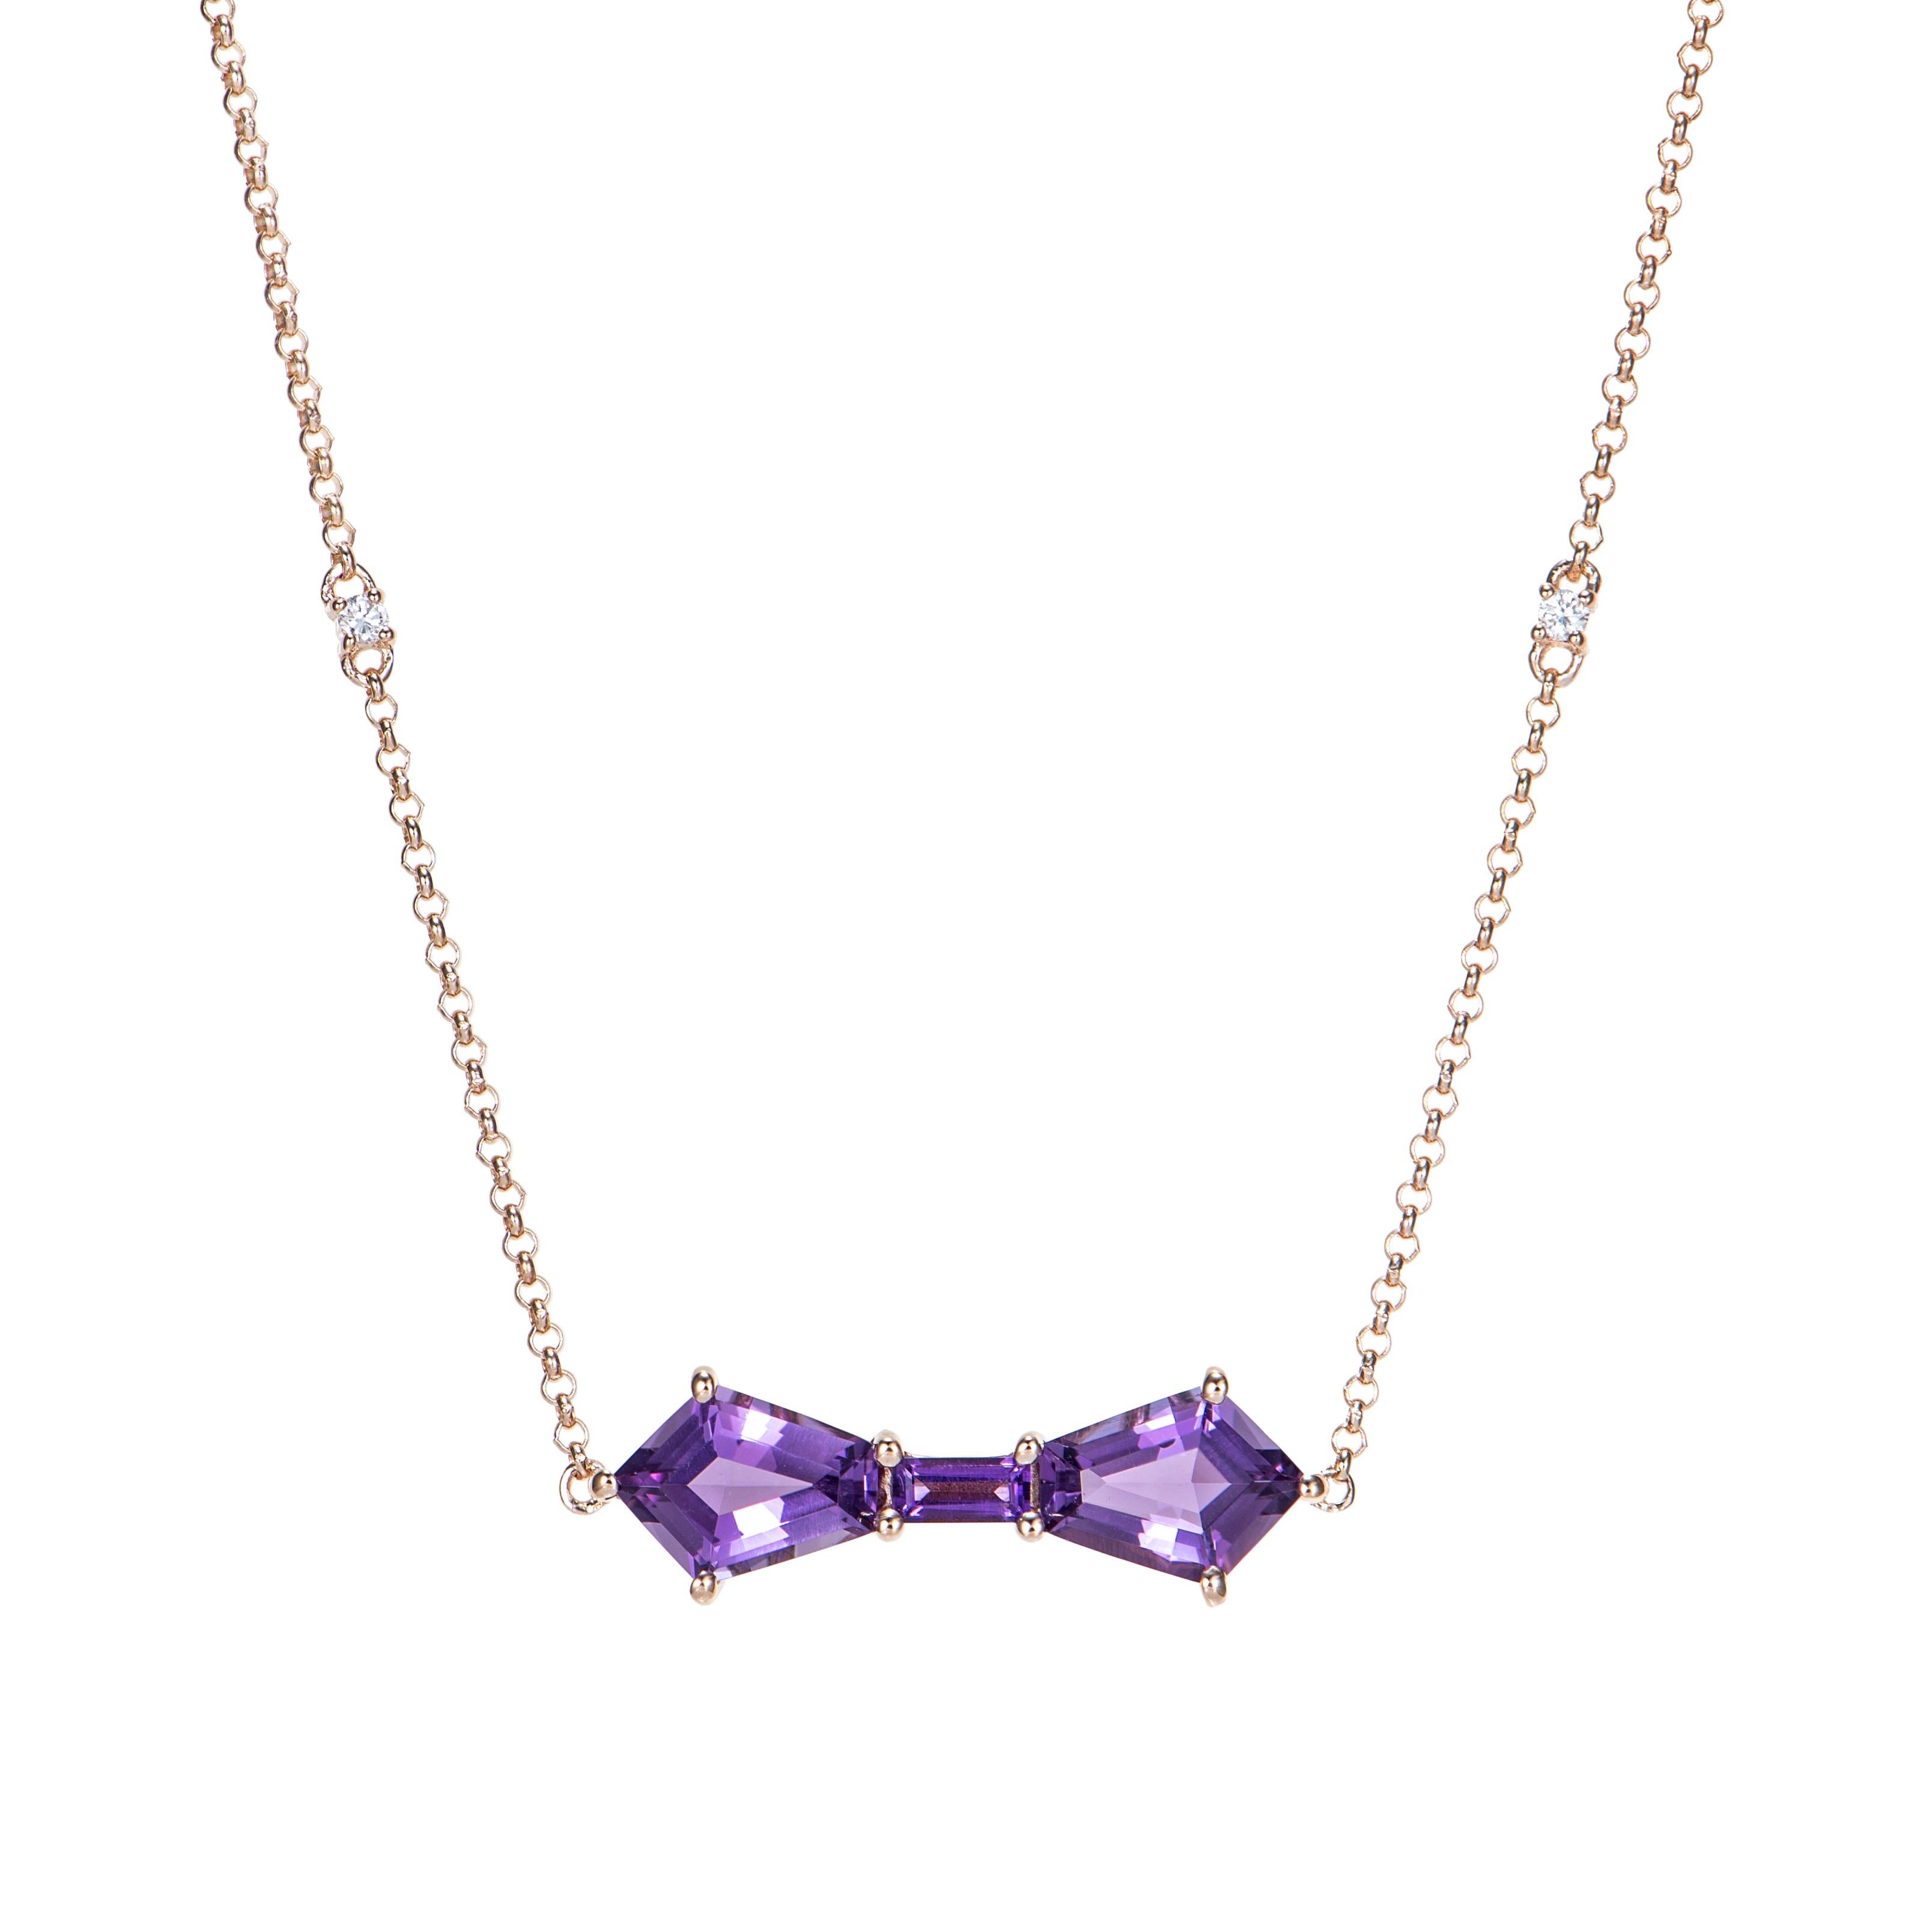 Il s'agit d'un pendentif en améthyste fantaisie de forme NIB avec une teinte violette. Ce pendentif en or rose a une apparence intemporelle et élégante et peut être porté à différentes occasions.

Pendentif en améthyste en or rose 14 carats avec